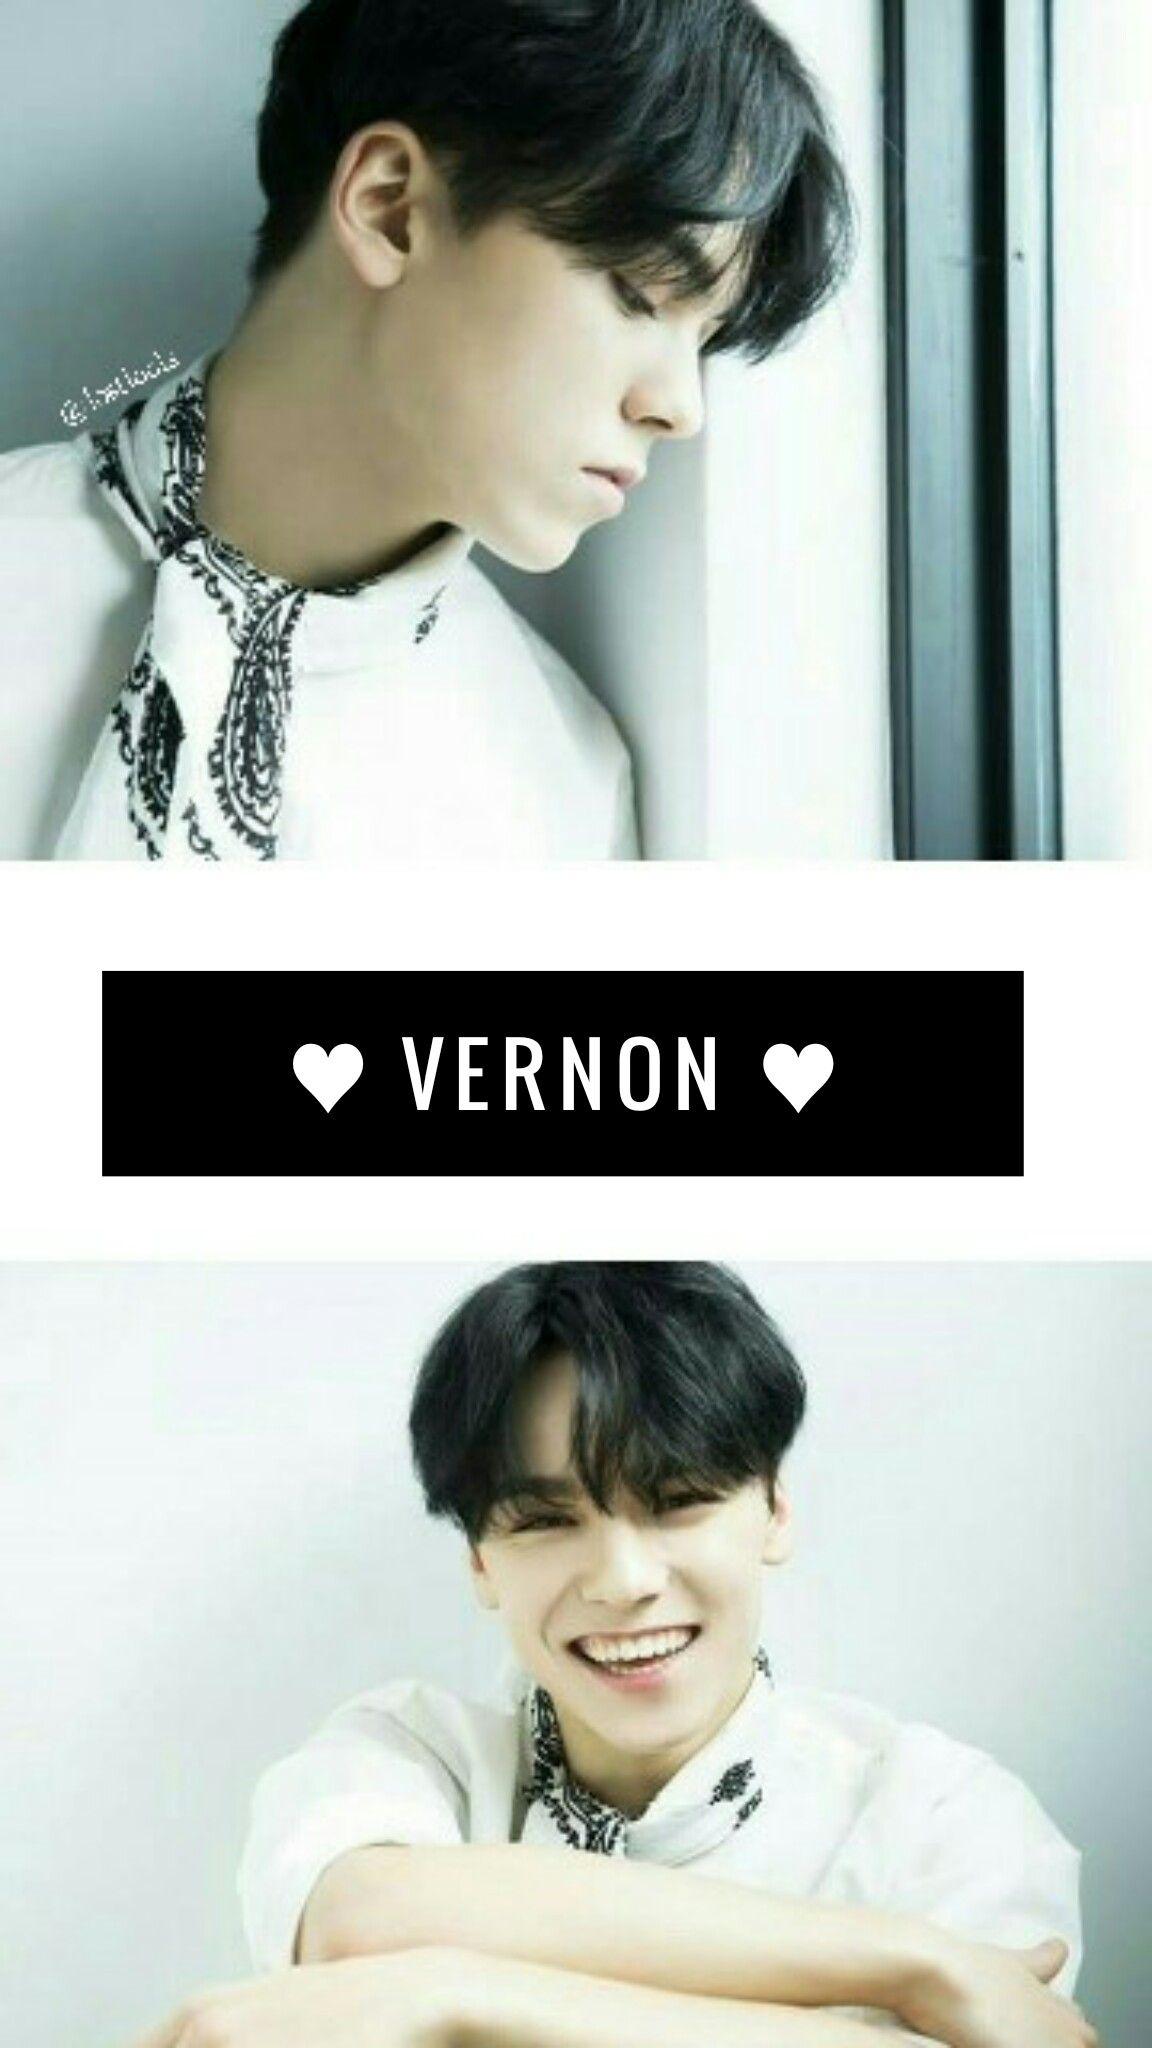 Vernon wallpaper. bae. Vernon, Seventeen and K pop